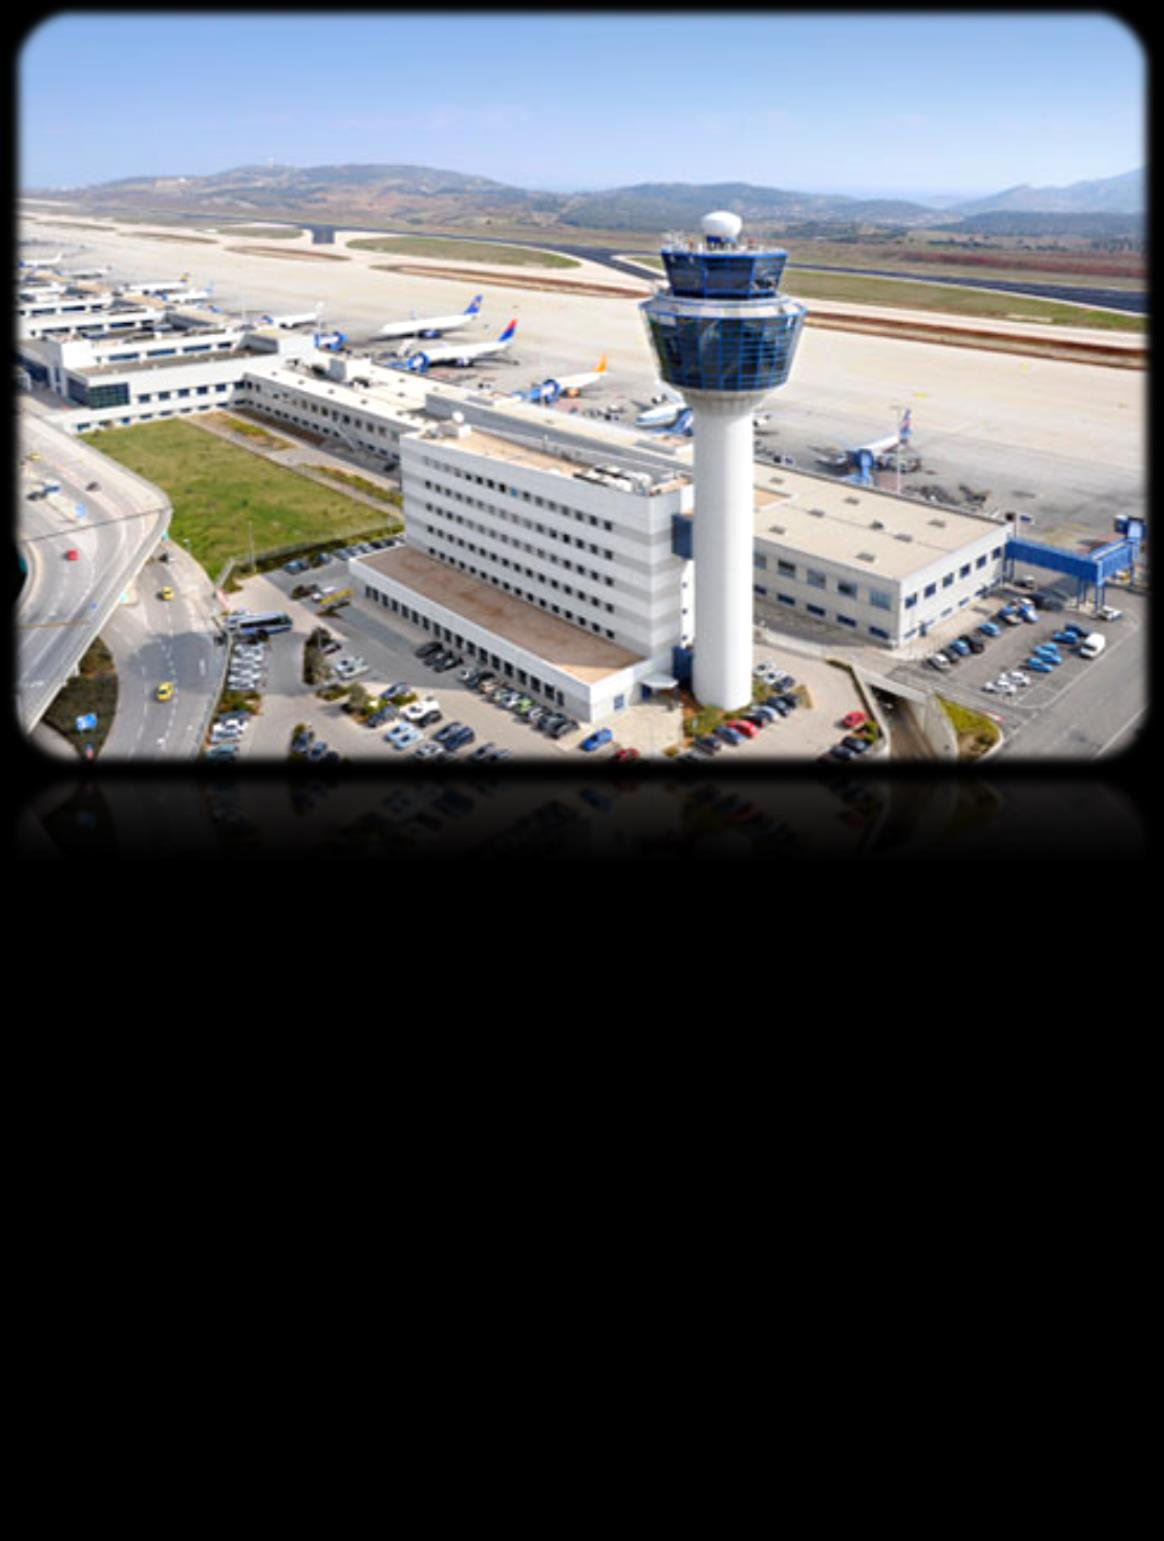 Γνωριμία με το «Ελευθέριος Βενιζέλος» Το διεθνές Αεροδρόμιο της Αθήνας «Ελευθέριος Βενιζέλος» εξυπηρετεί την Αττική.